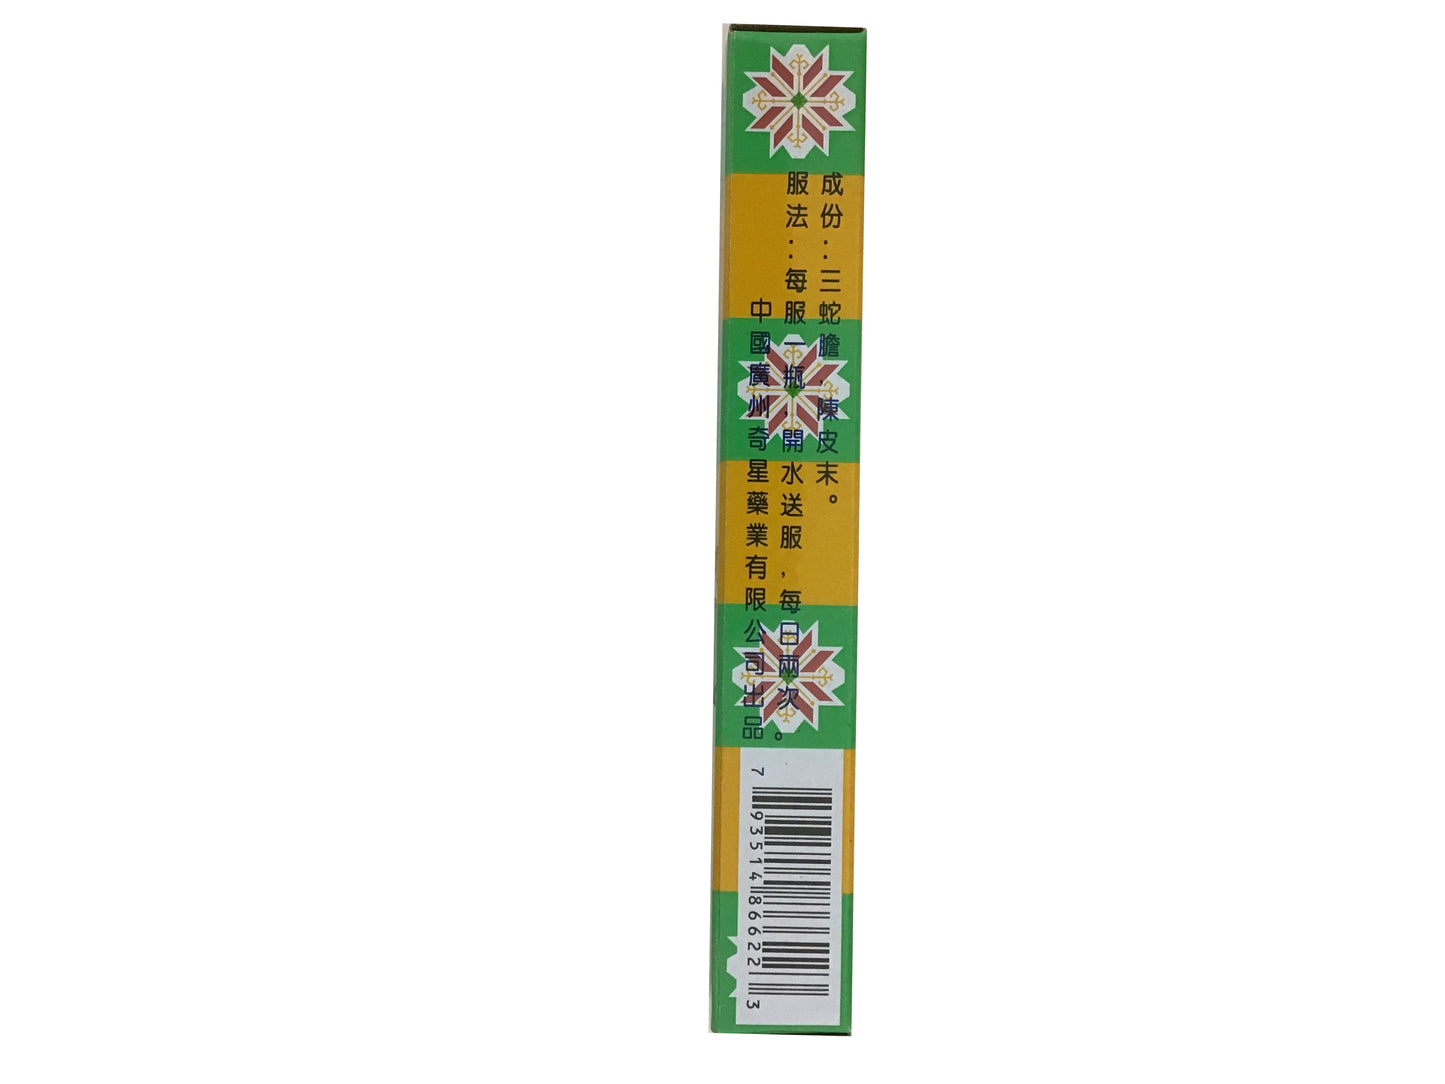 Star-Ring Brand Orange Peel Powder (Pack of 12) 蛇胆陈皮散